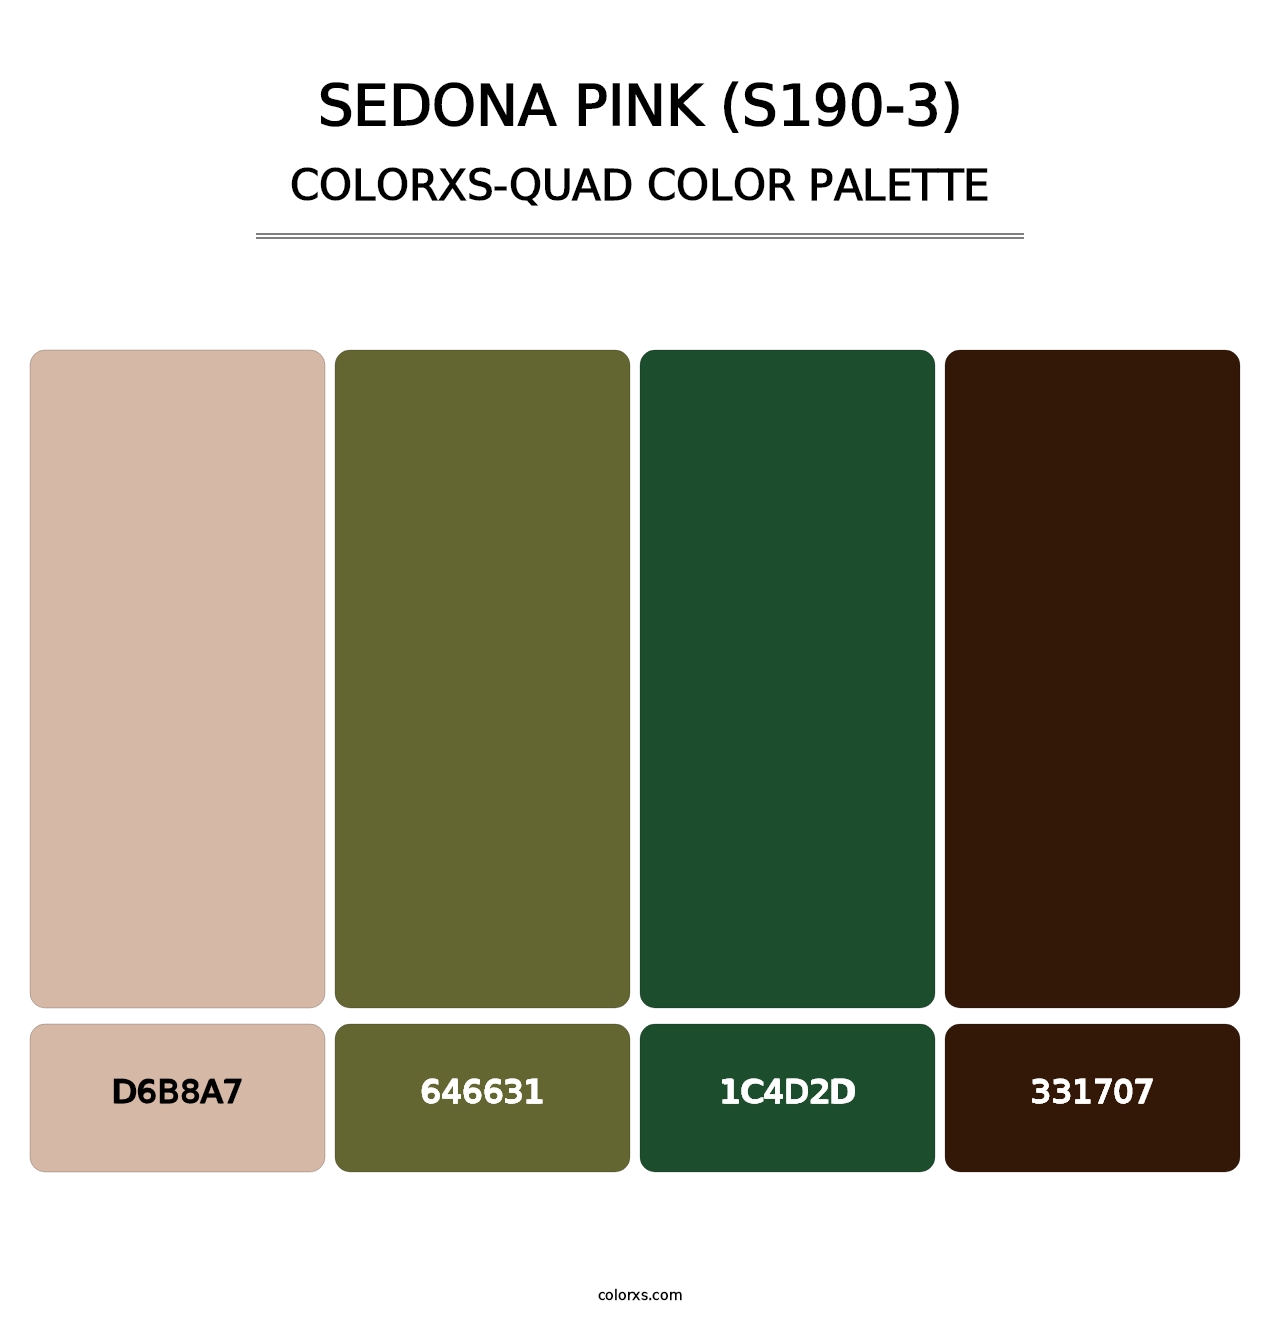 Sedona Pink (S190-3) - Colorxs Quad Palette